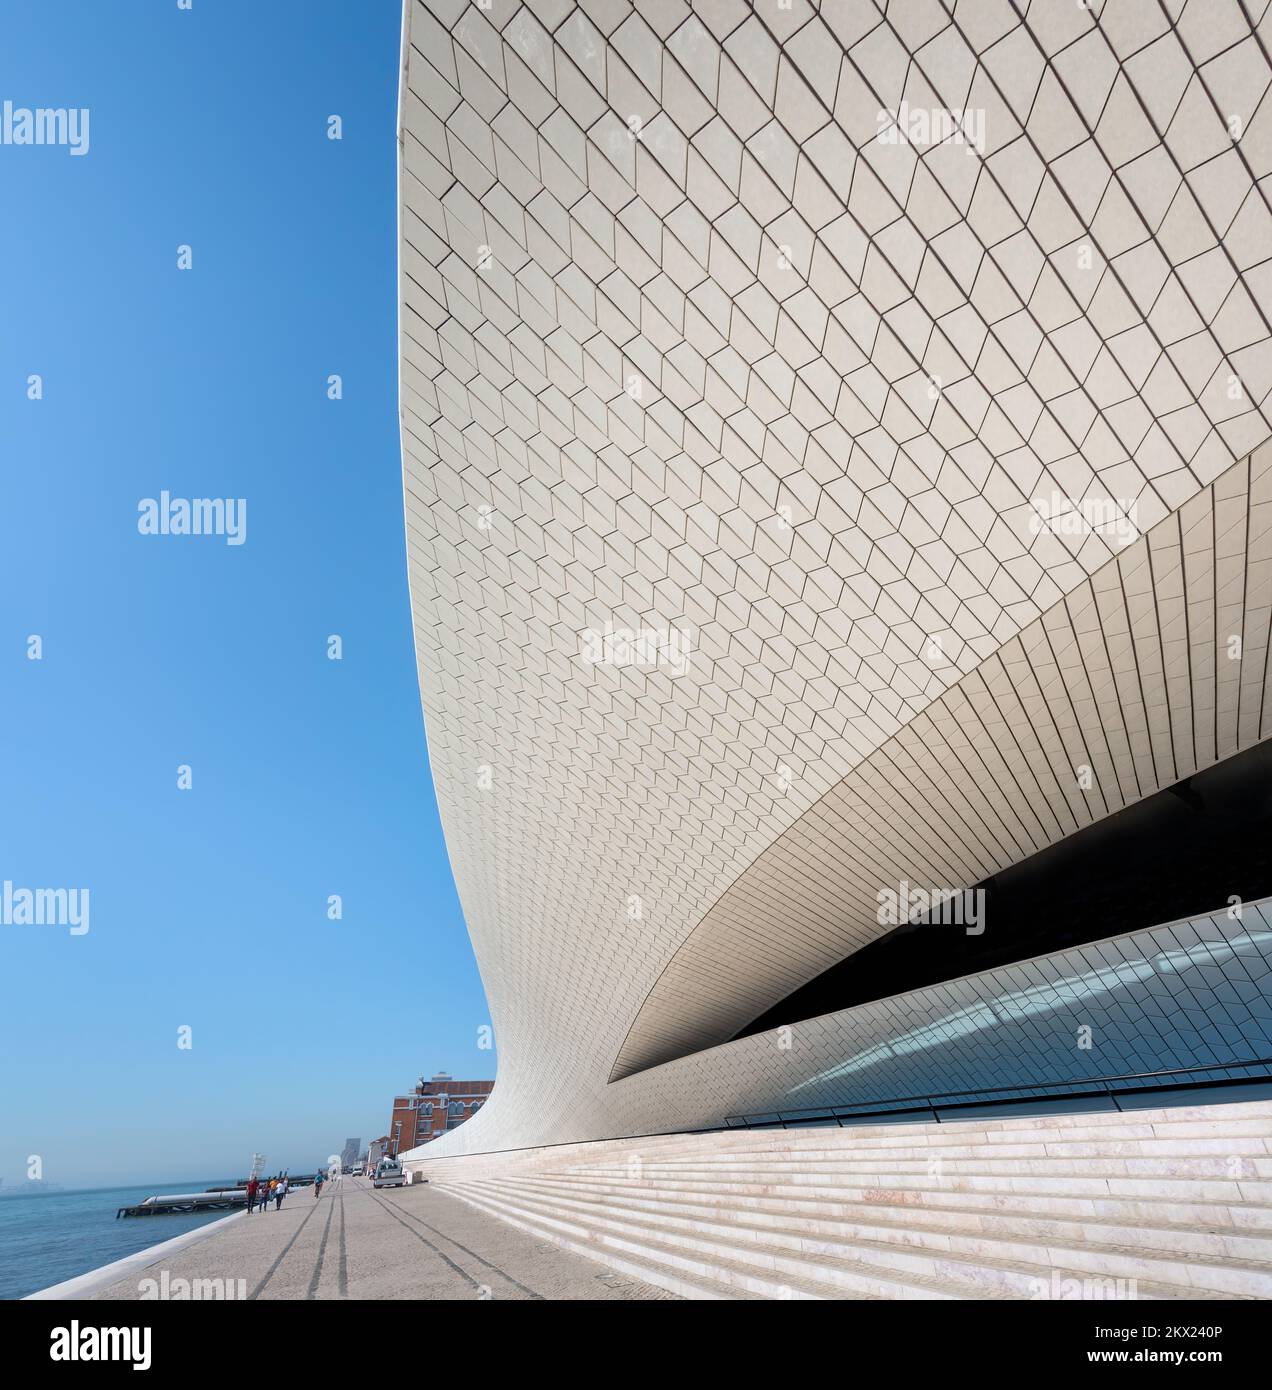 Museo d'Arte, architettura e tecnologia (MAAT) - Lisbona, Portogallo Foto Stock